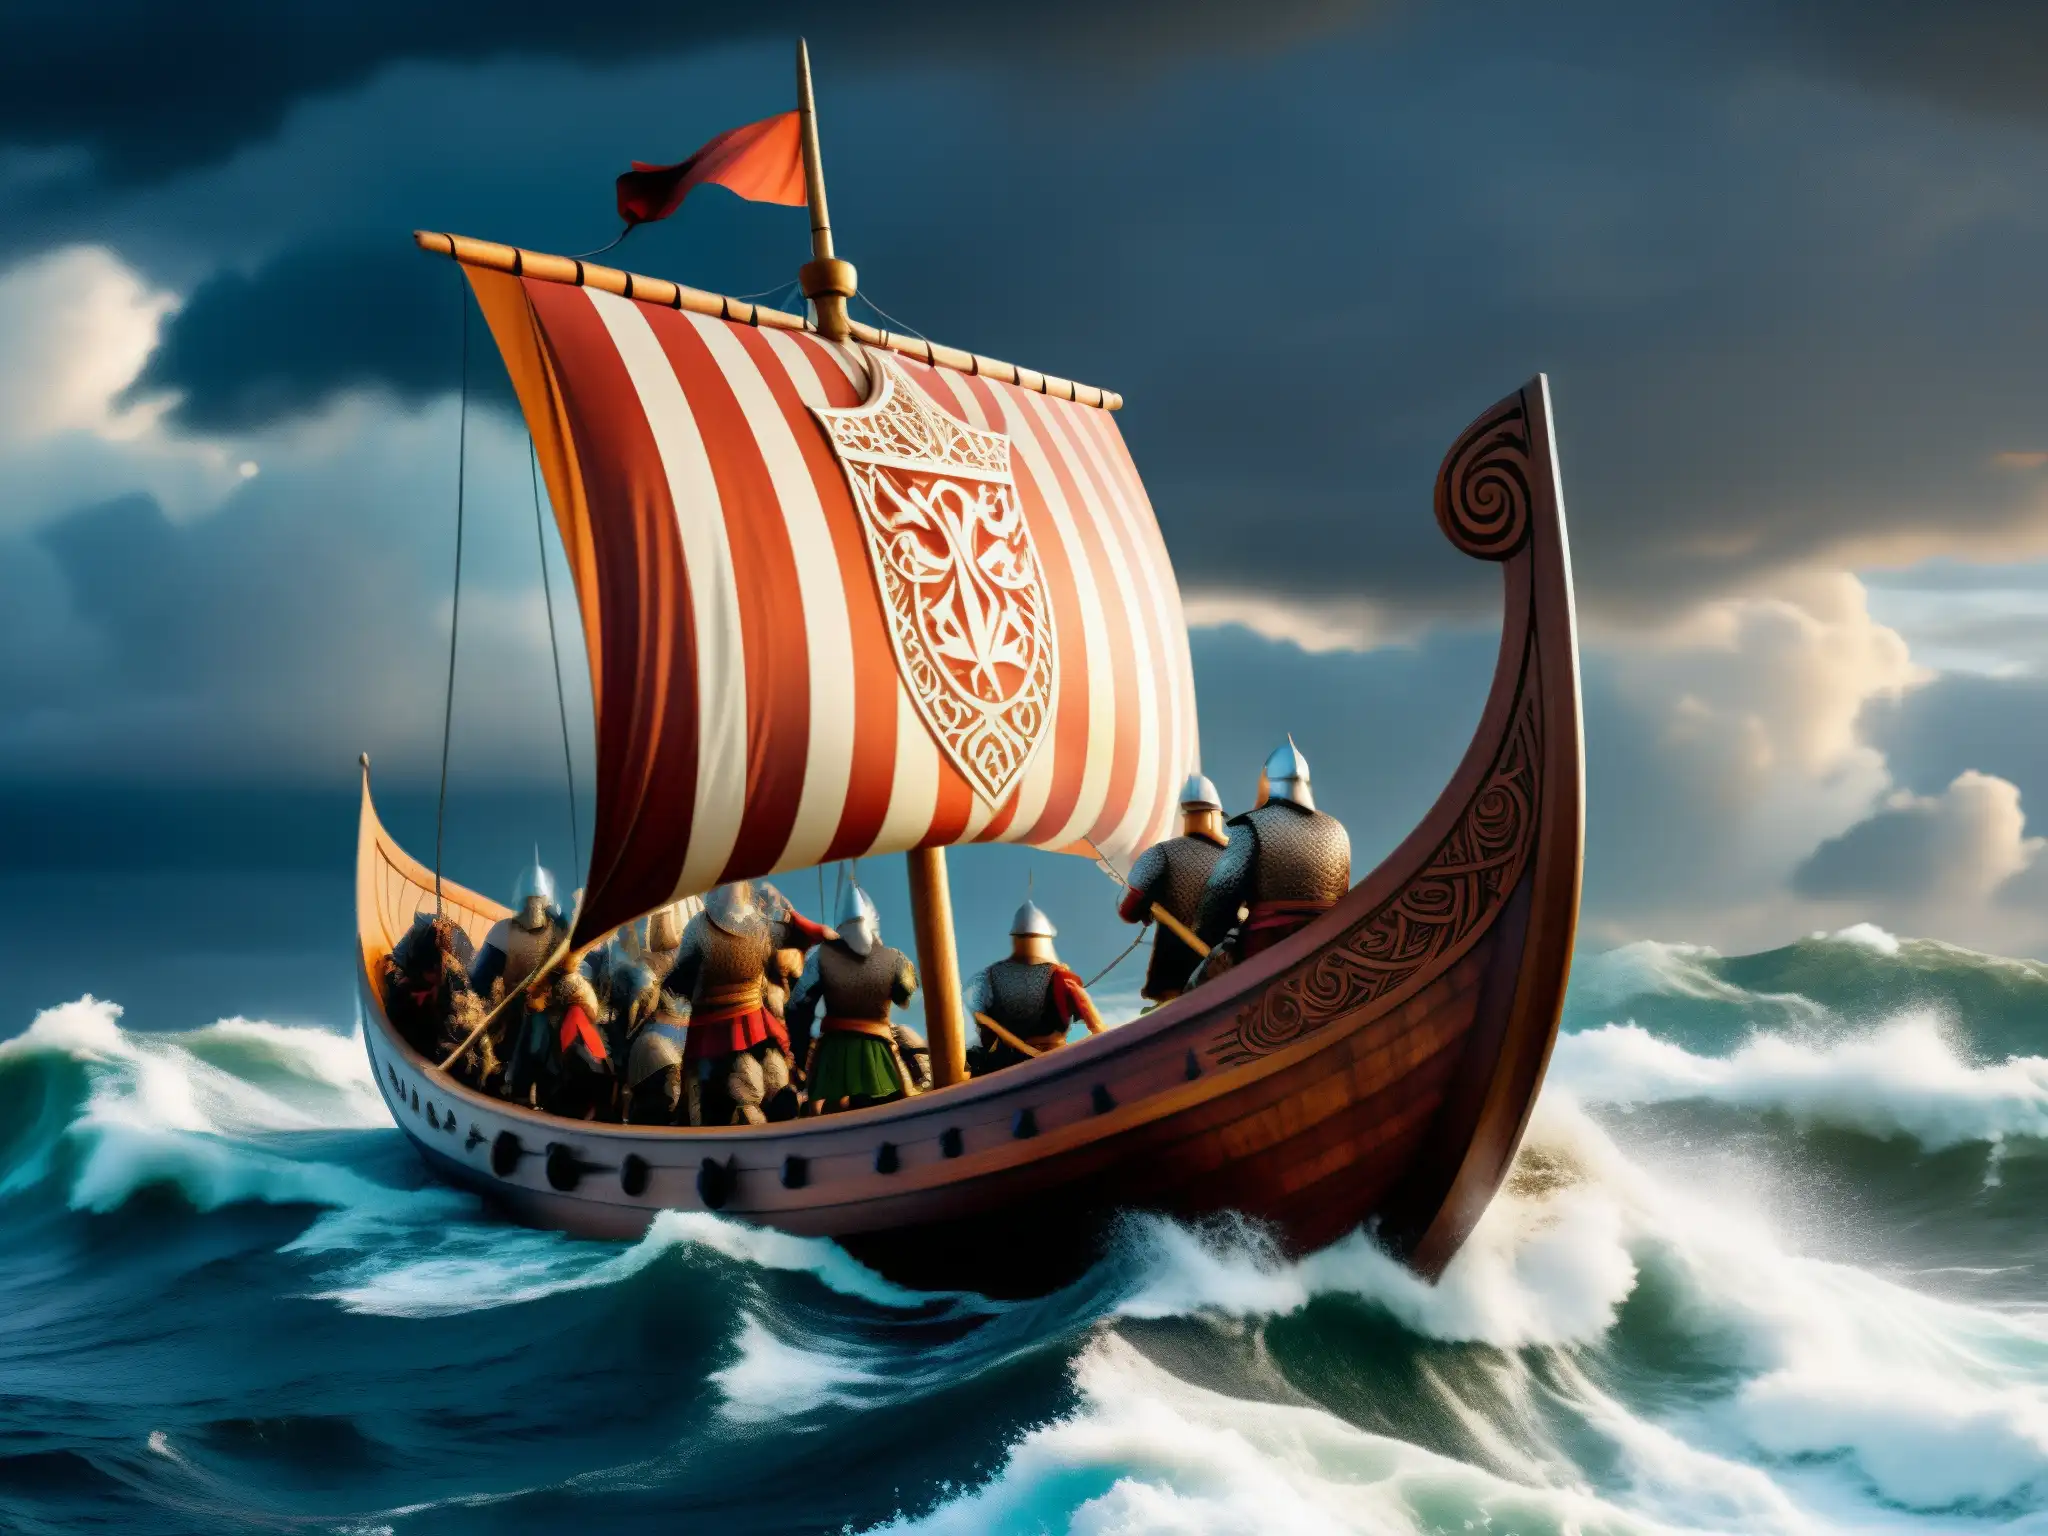 Un imponente barco vikingo surca aguas turbulentas con guerreros listos para la batalla